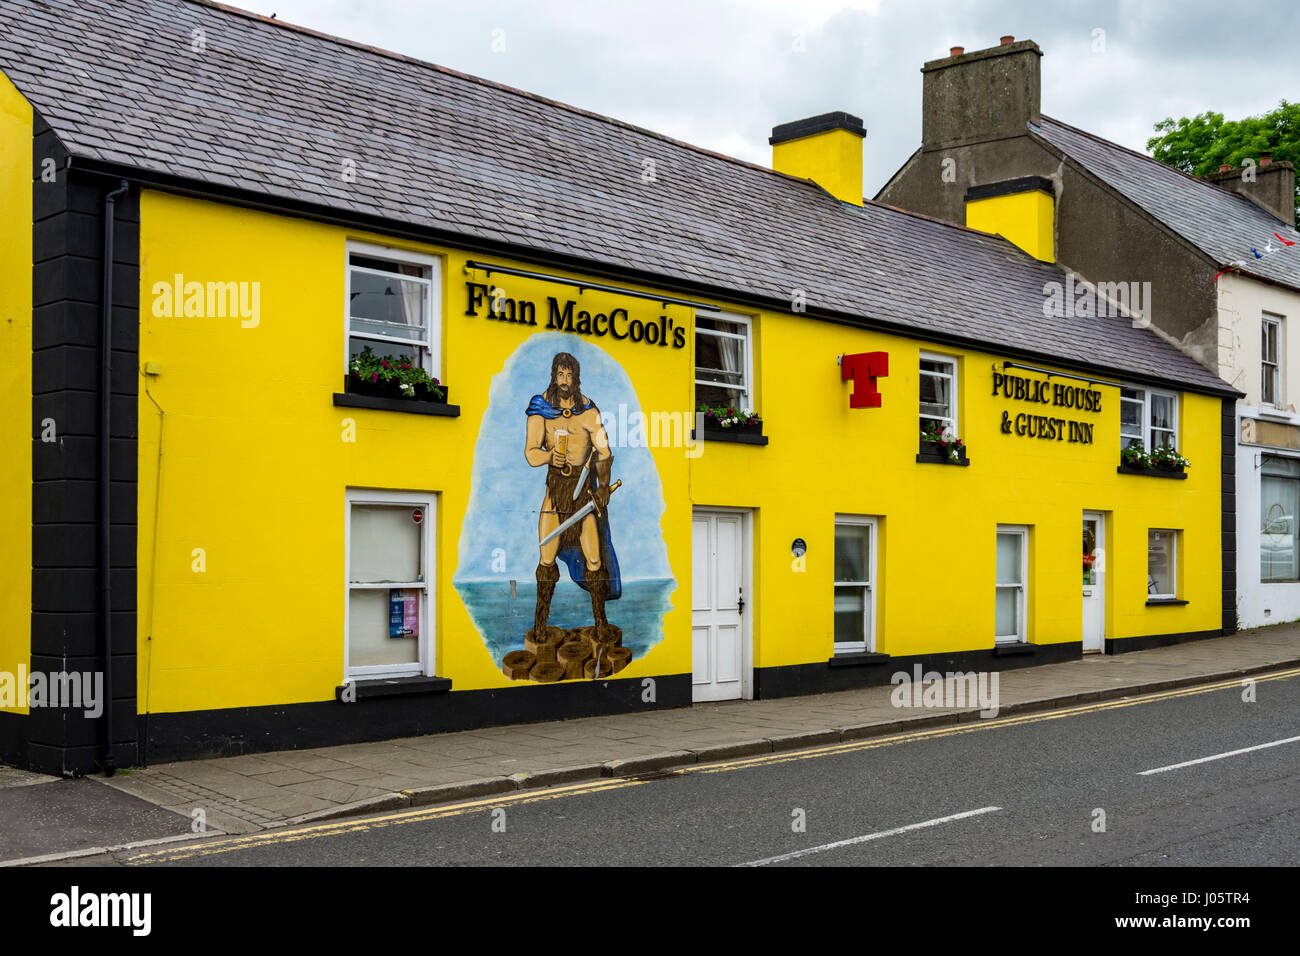 Finn MacCool's pub, Bushmills, Northern Ireland, UK Stock Photo